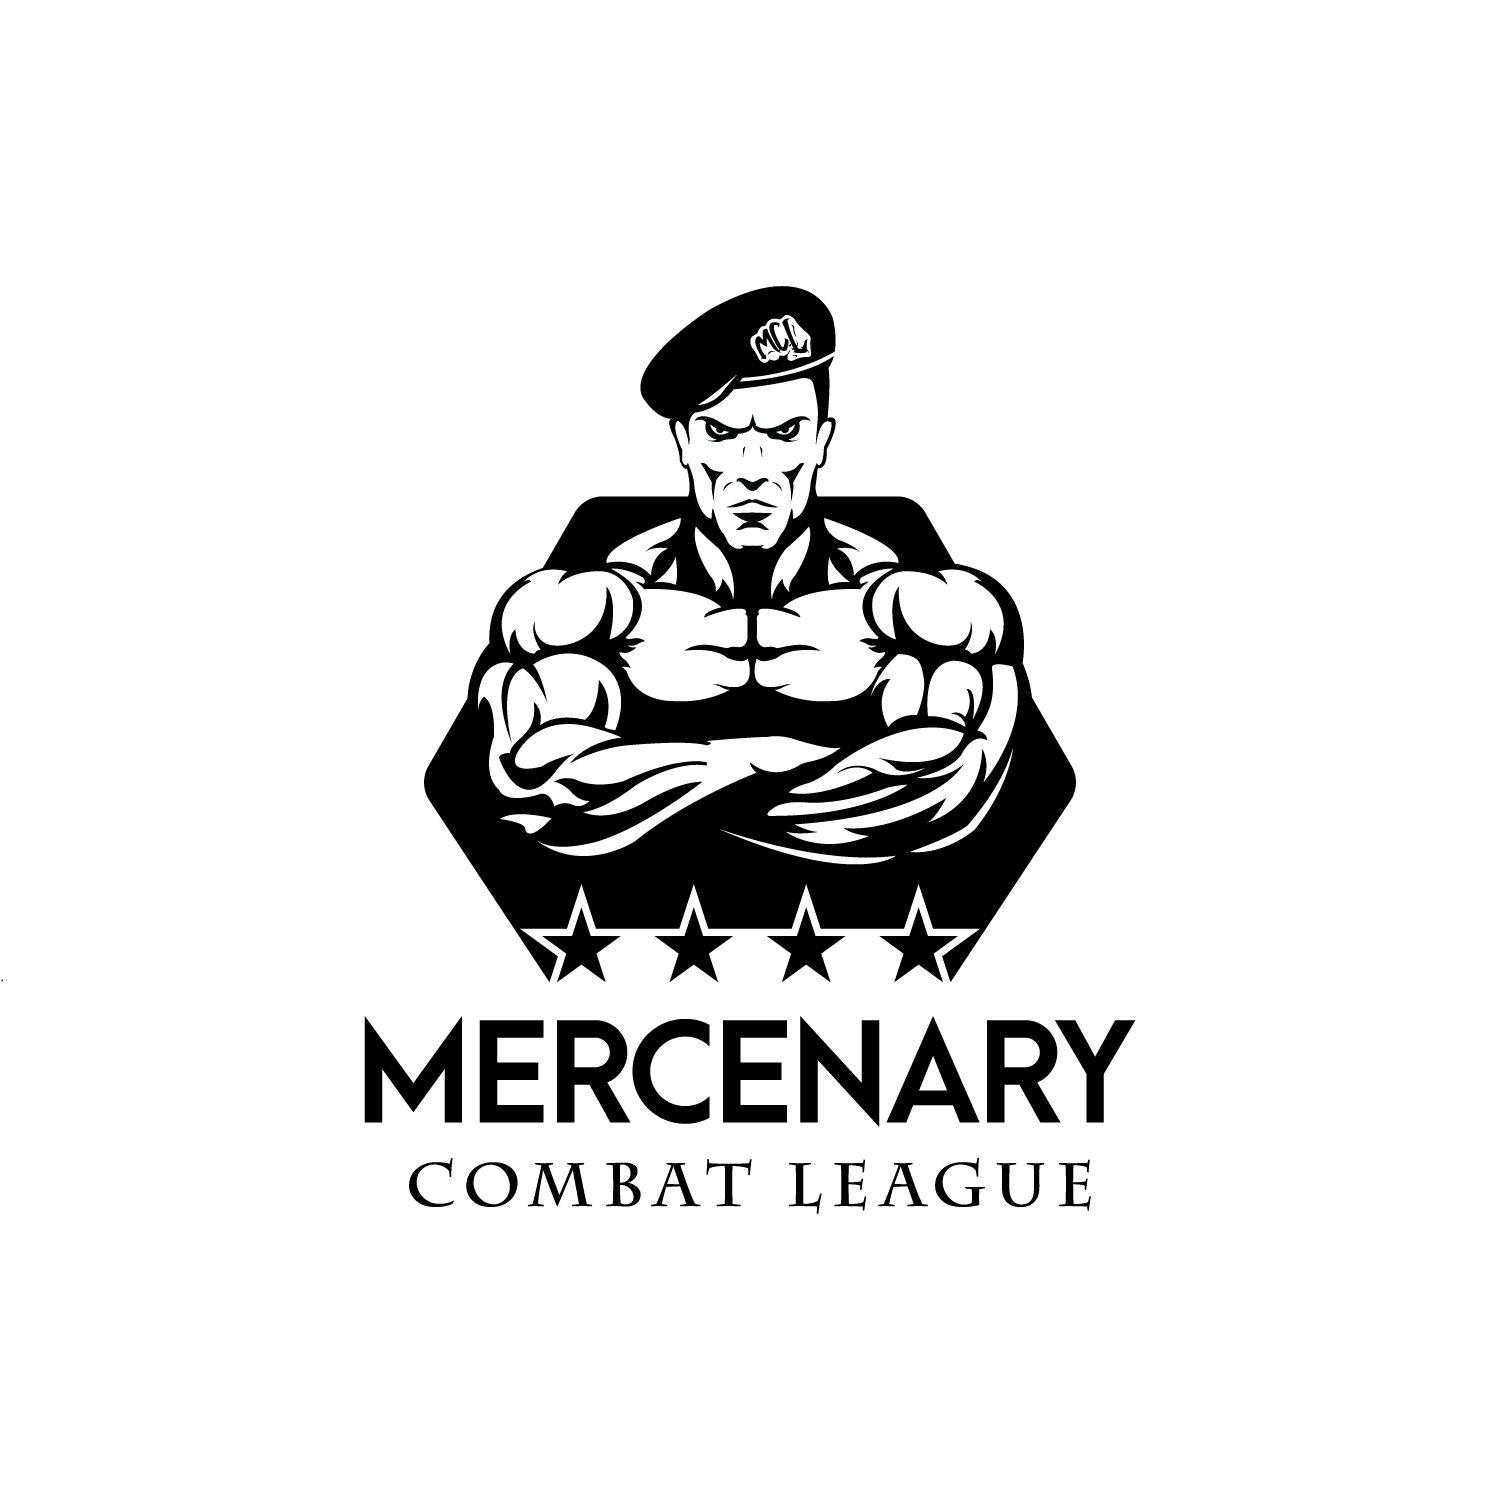 Mercenary Logo - Masculine, Bold, Entertainment Logo Design for MCL or Mercenary